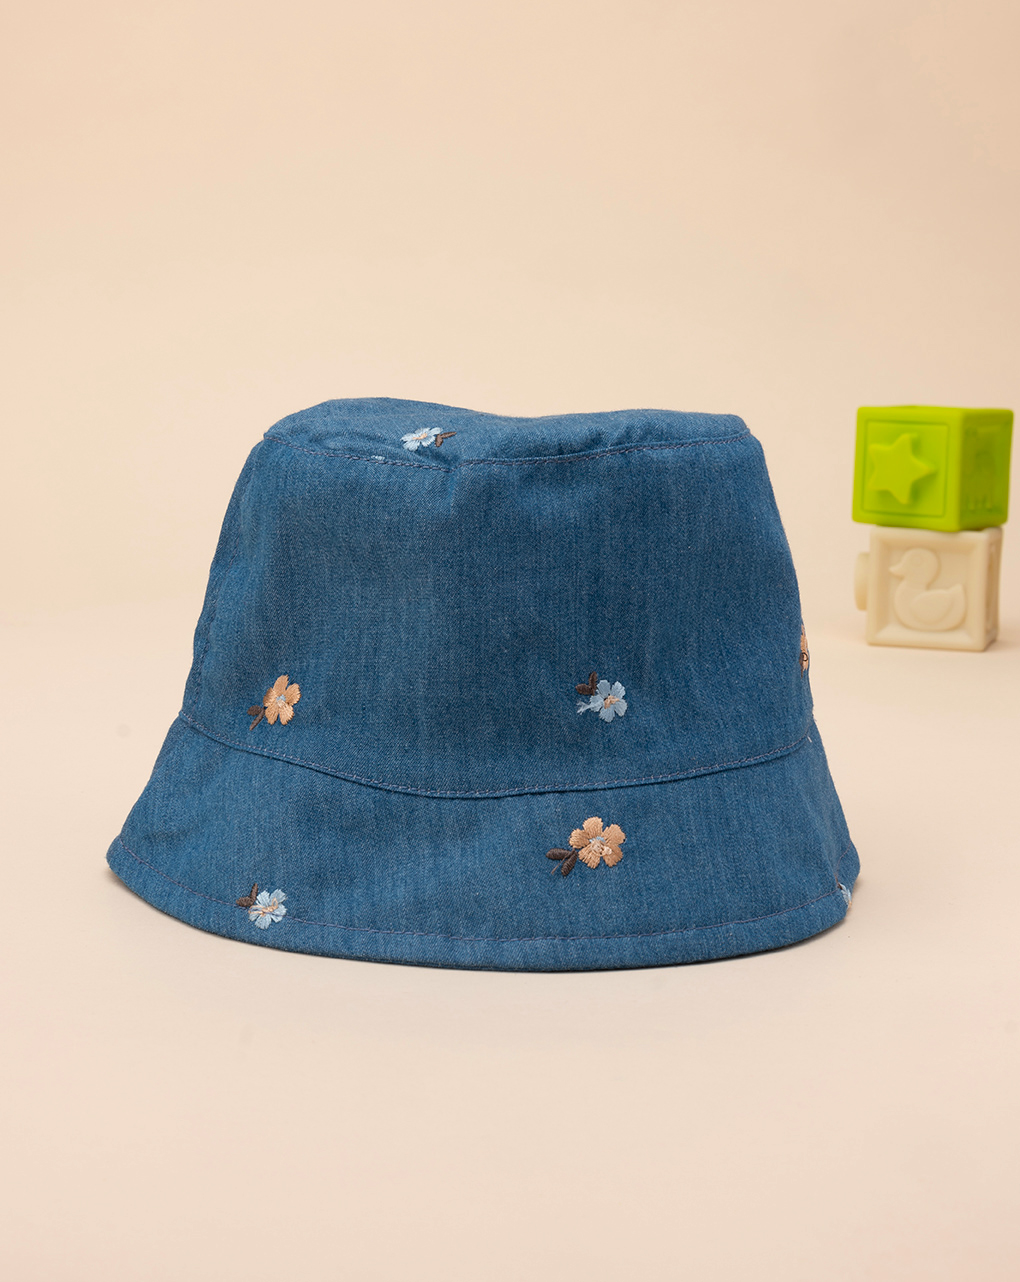 βρεφικό τζιν καπέλο ψαρά με λουλούδια για κορίτσι